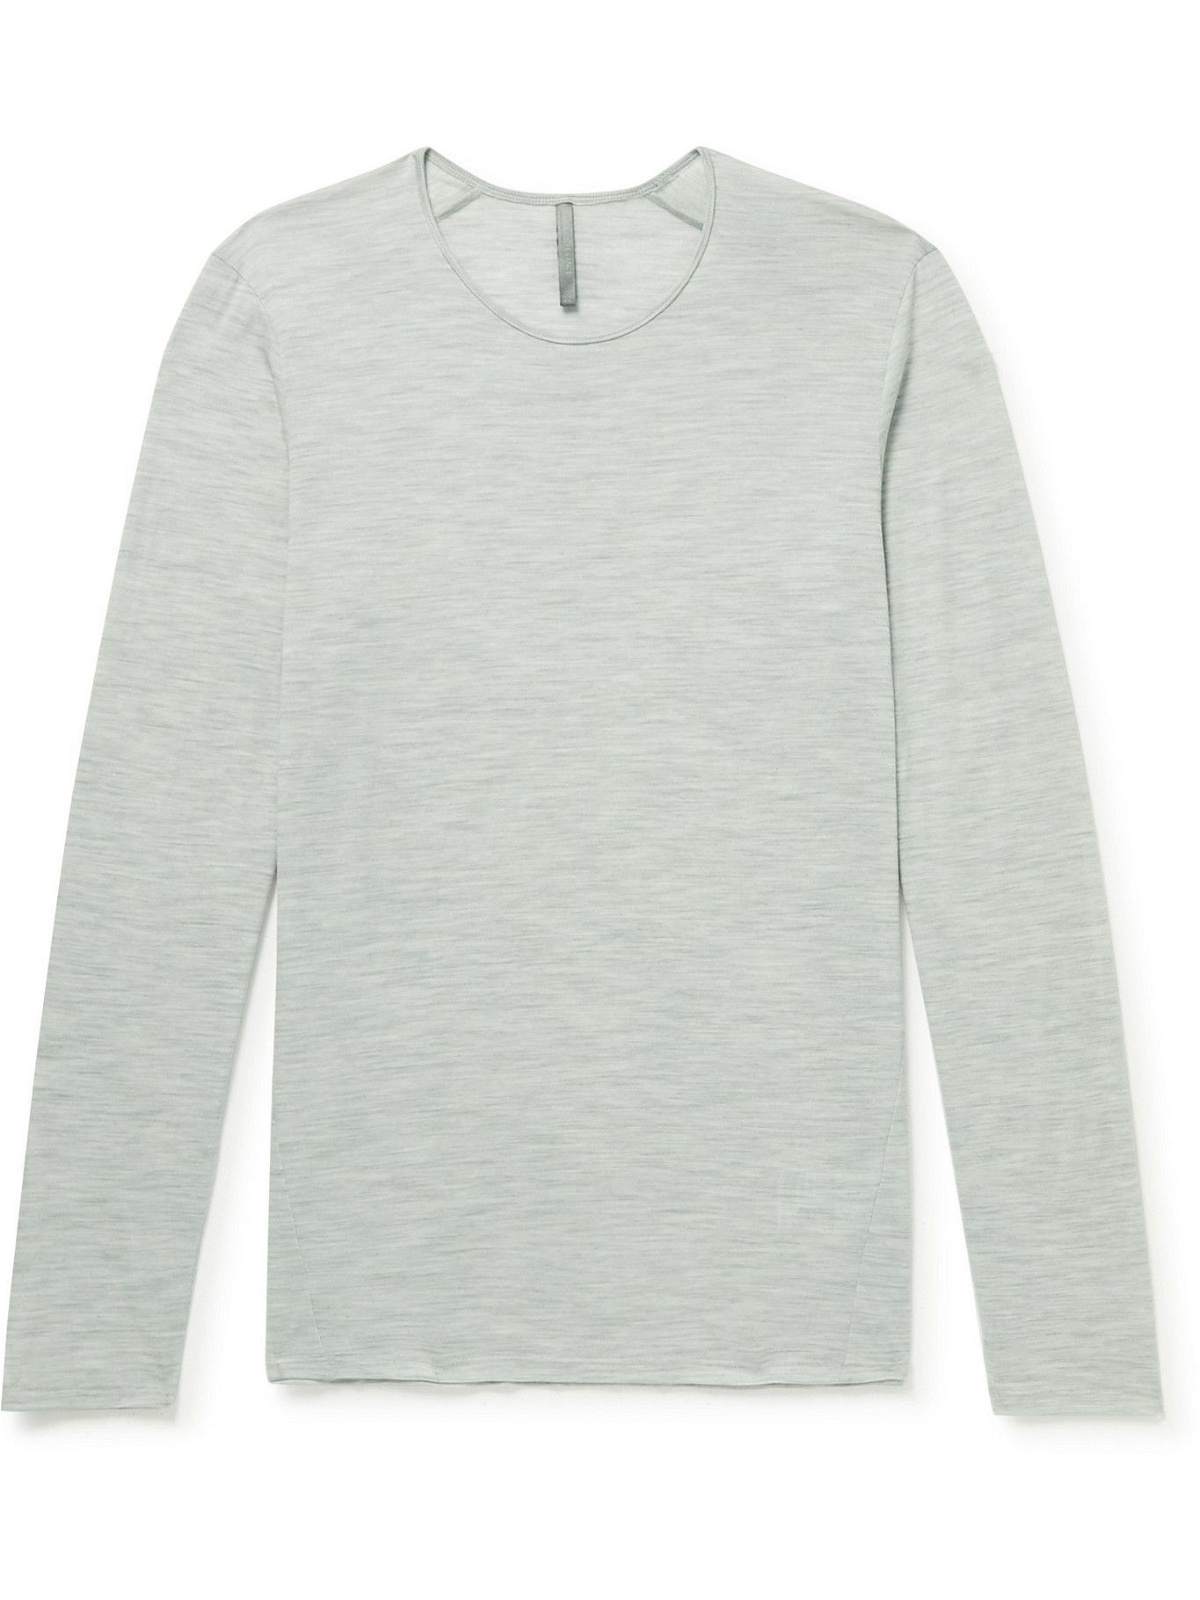 Photo: Veilance - Frame Wool-Blend T-Shirt - Gray